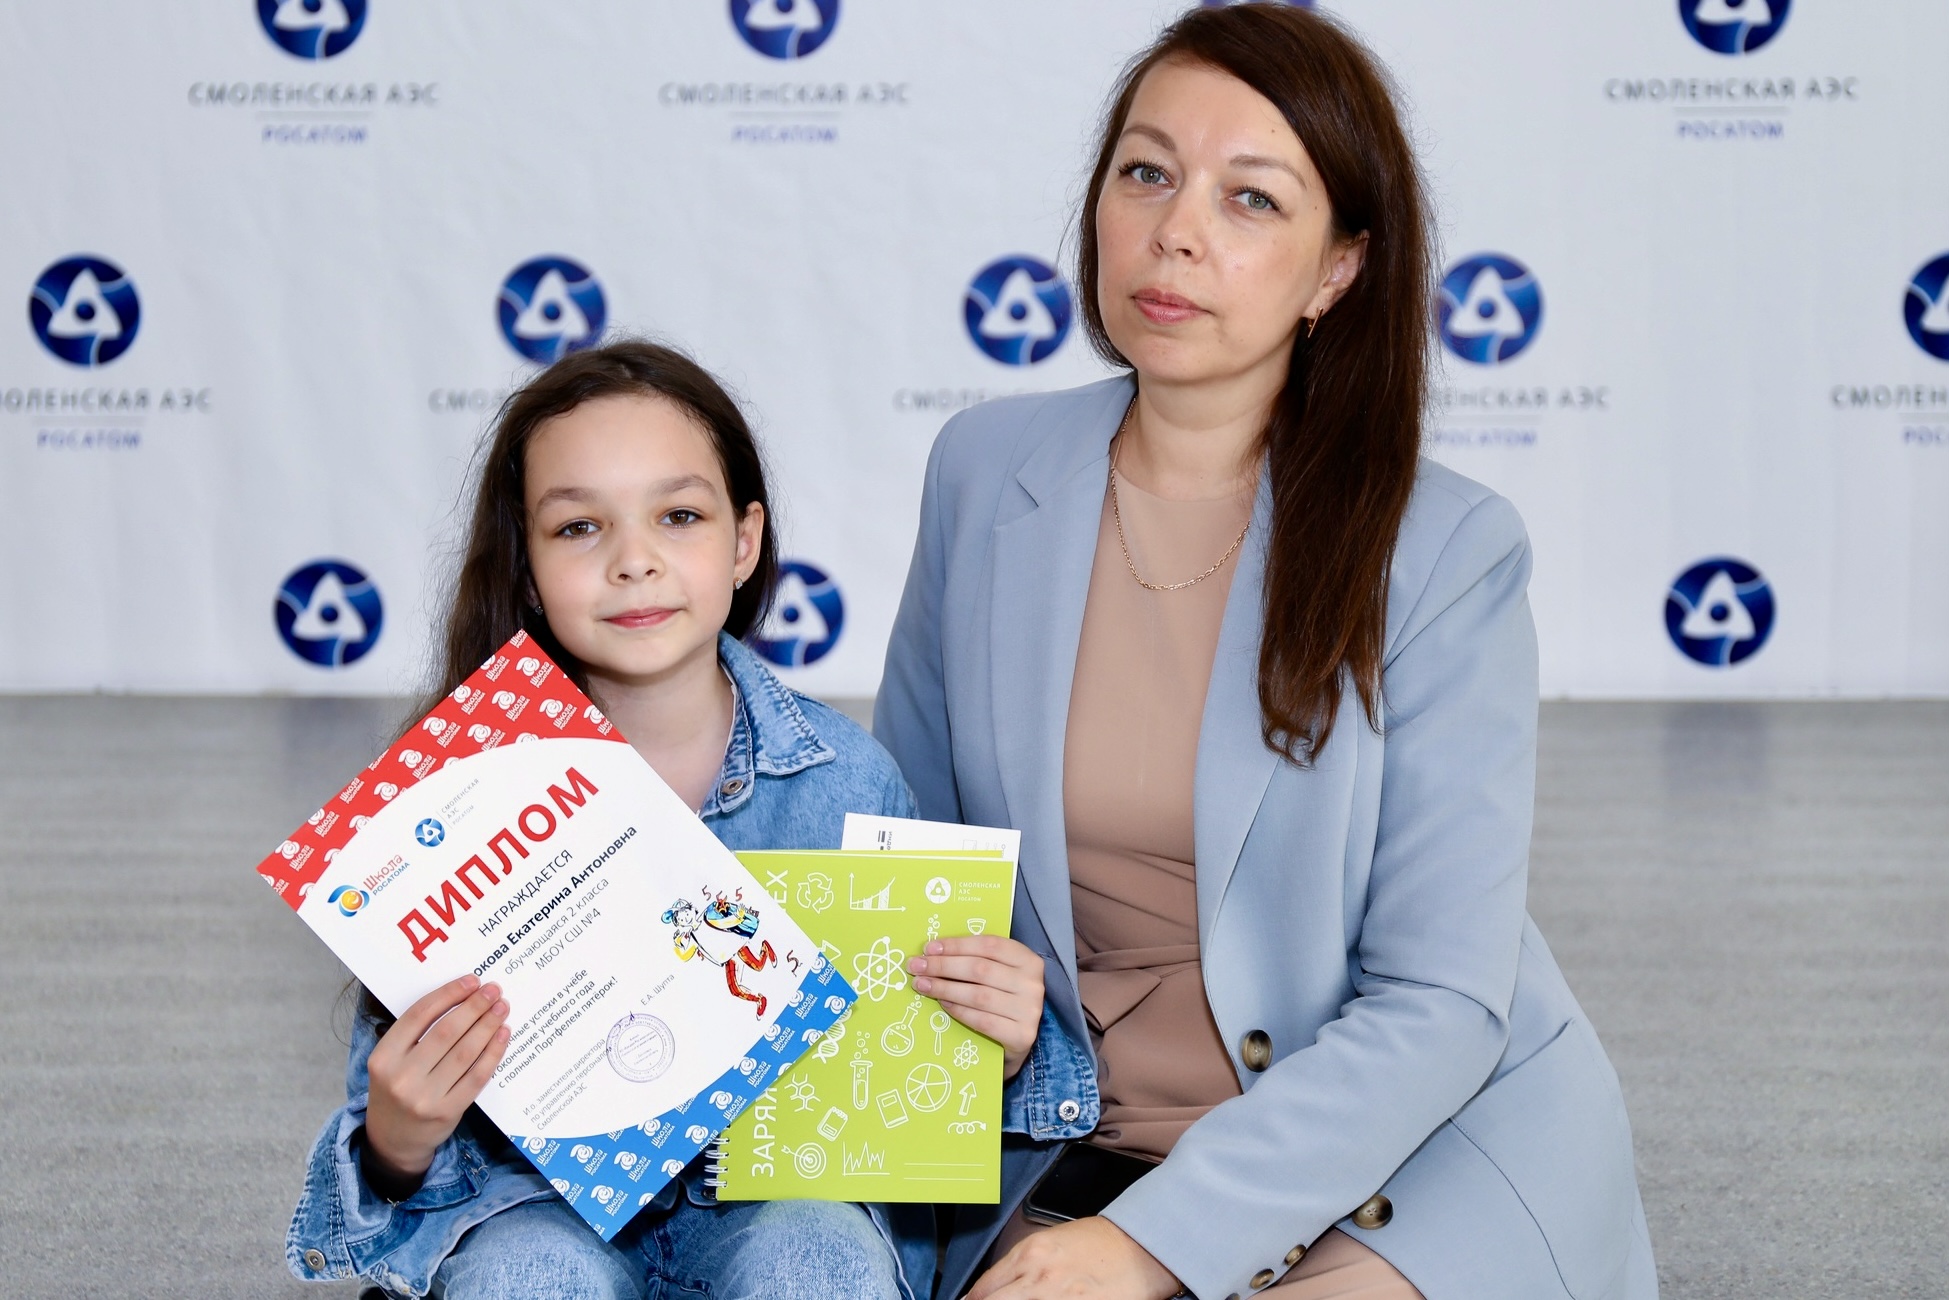 Смоленская АЭС: отличники города Десногорска собрали свой портфель пятёрок в рамках проекта Росатома